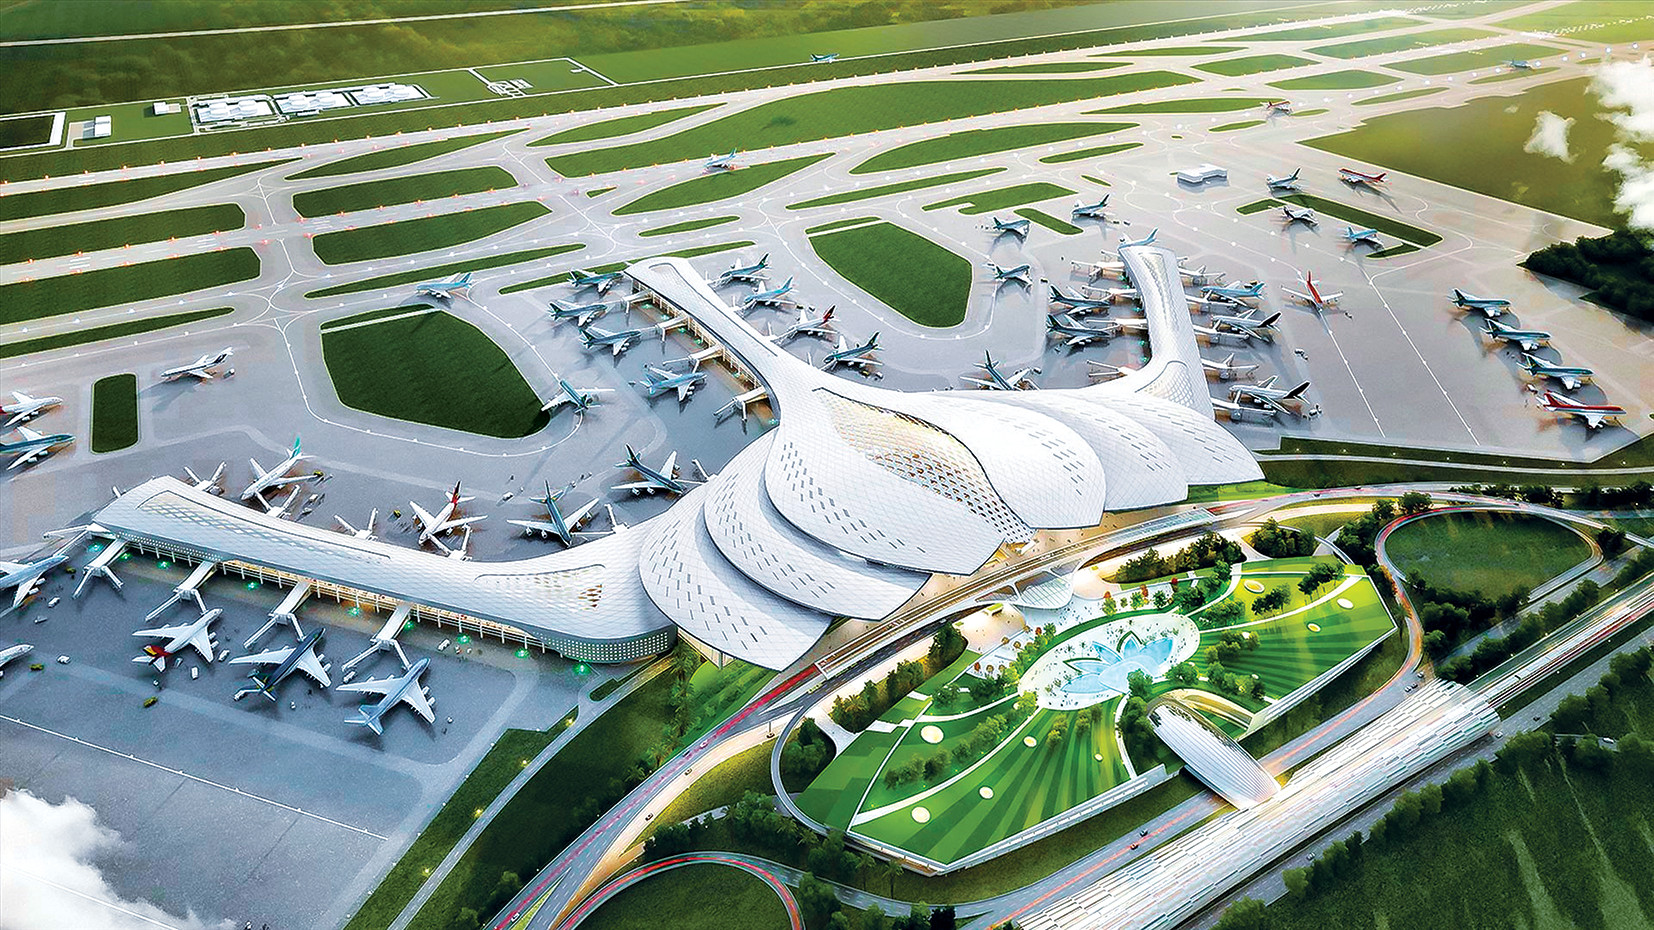 Siêu sân bay Long Thành - một công trình đình đám với quy mô vô cùng ấn tượng và hiện đại. Hãy cùng tới và thăm quan để được trải nghiệm những ấn tượng tuyệt vời nhất, đồng thời chiêm ngưỡng sự phát triển tuyệt vời của đất nước.